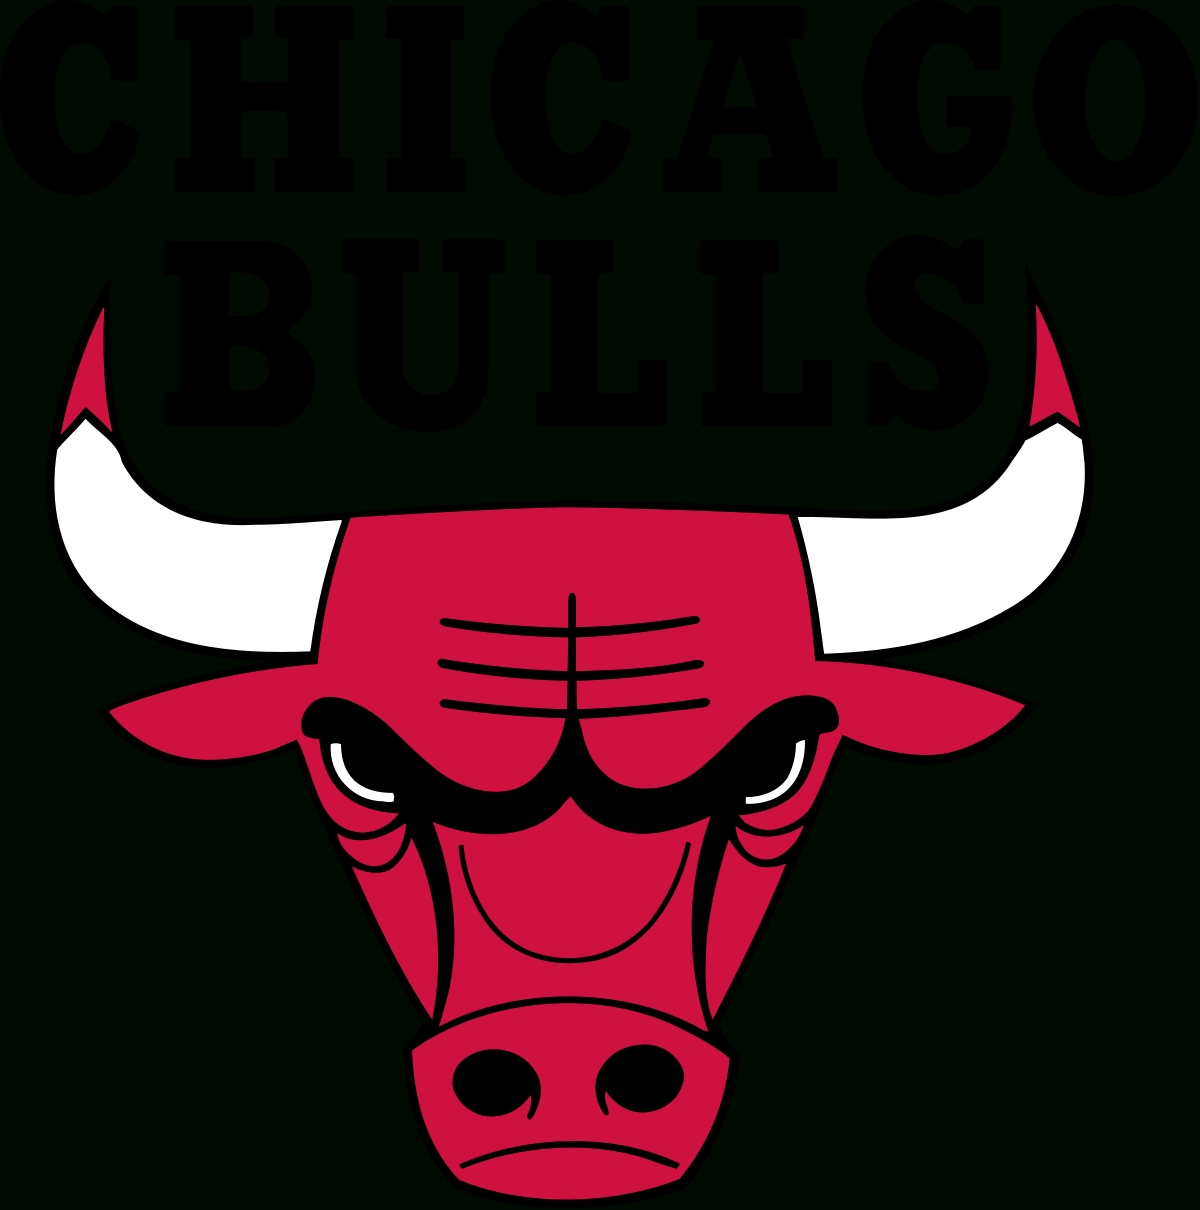 chicago bulls - wikipedia